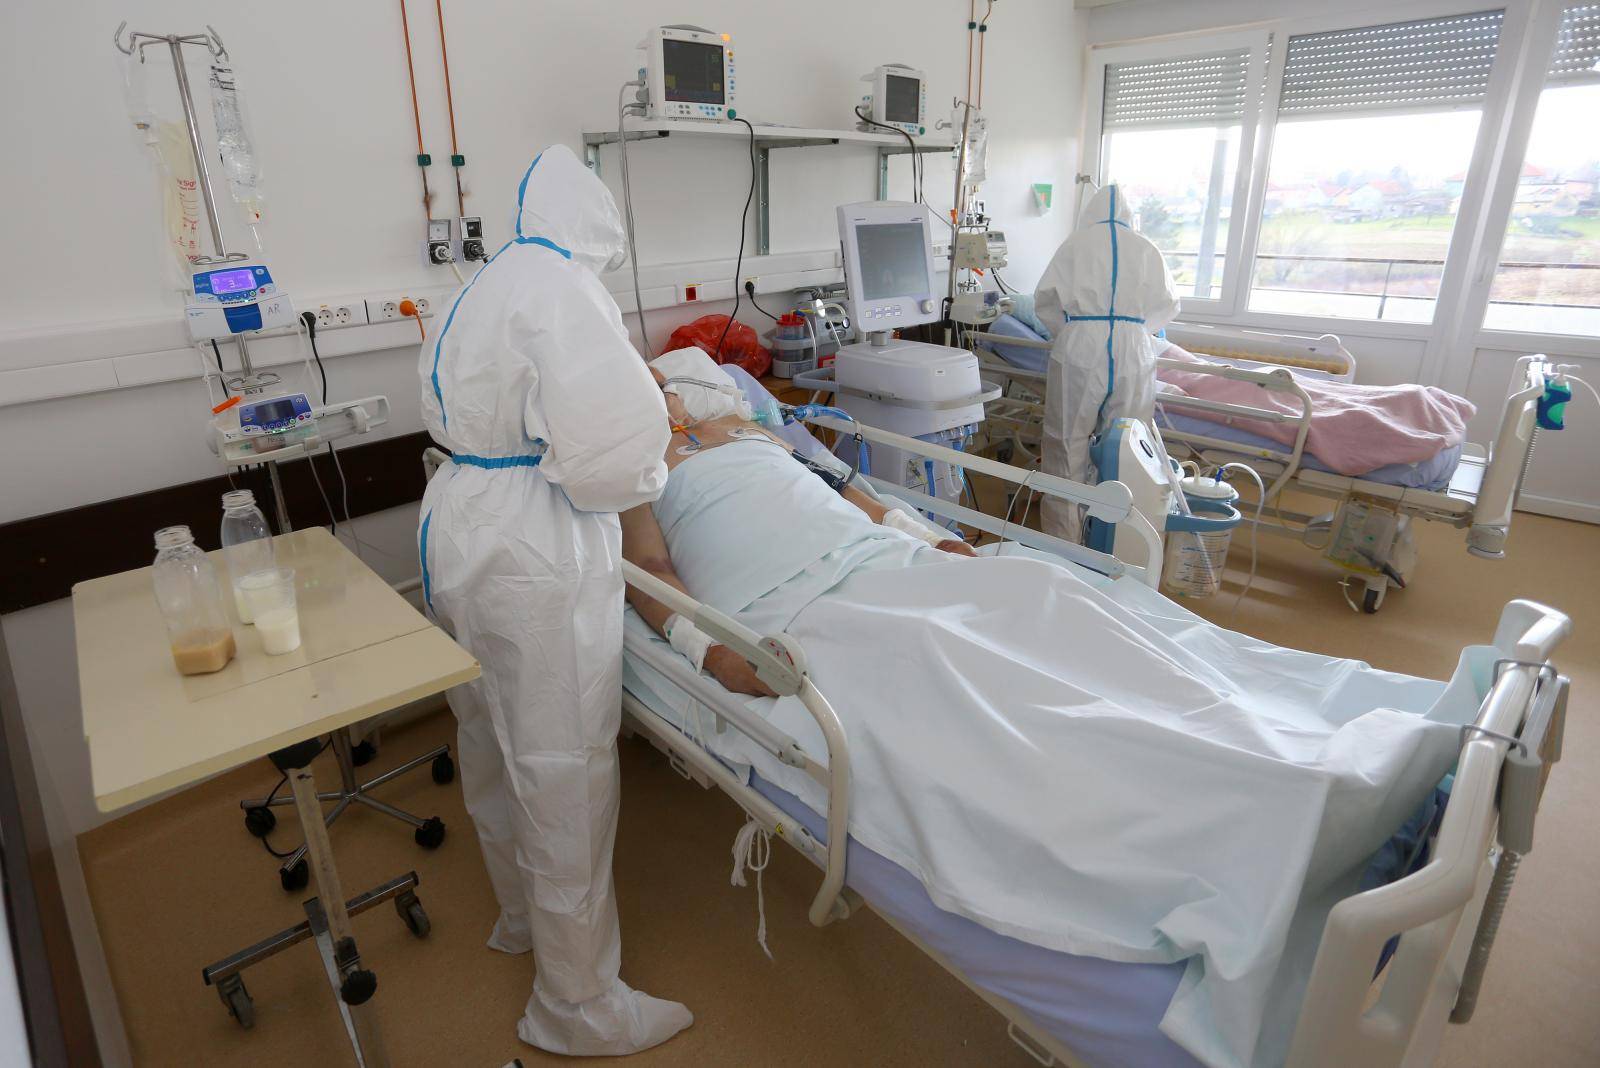 Kapaciteti covid odjela karlovačke bolnice popunjeni, na respir